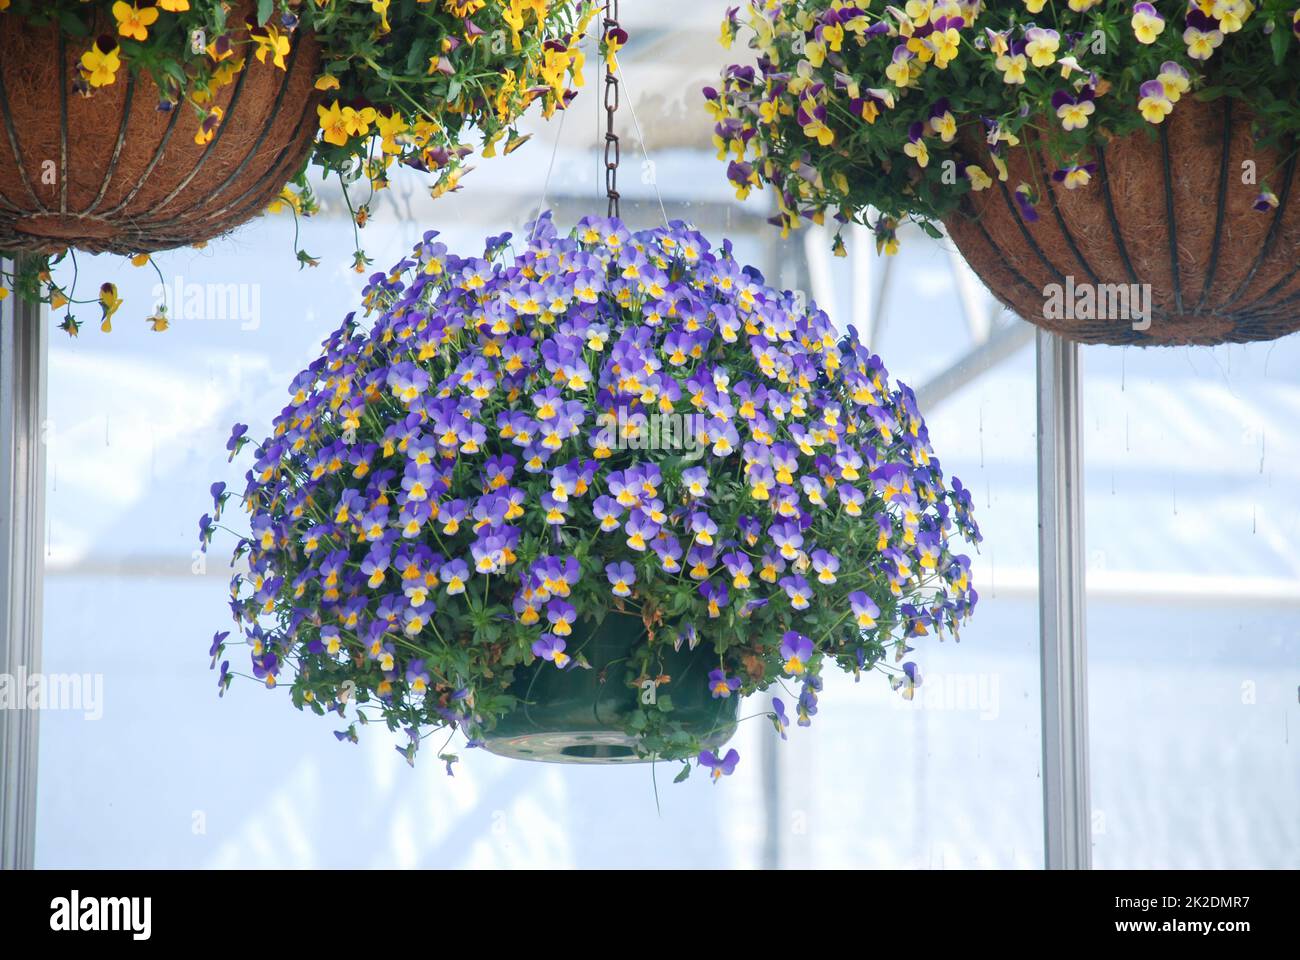 Pansies de fleurs jaunes et violettes claires pour une fleur en pansy colorée Banque D'Images